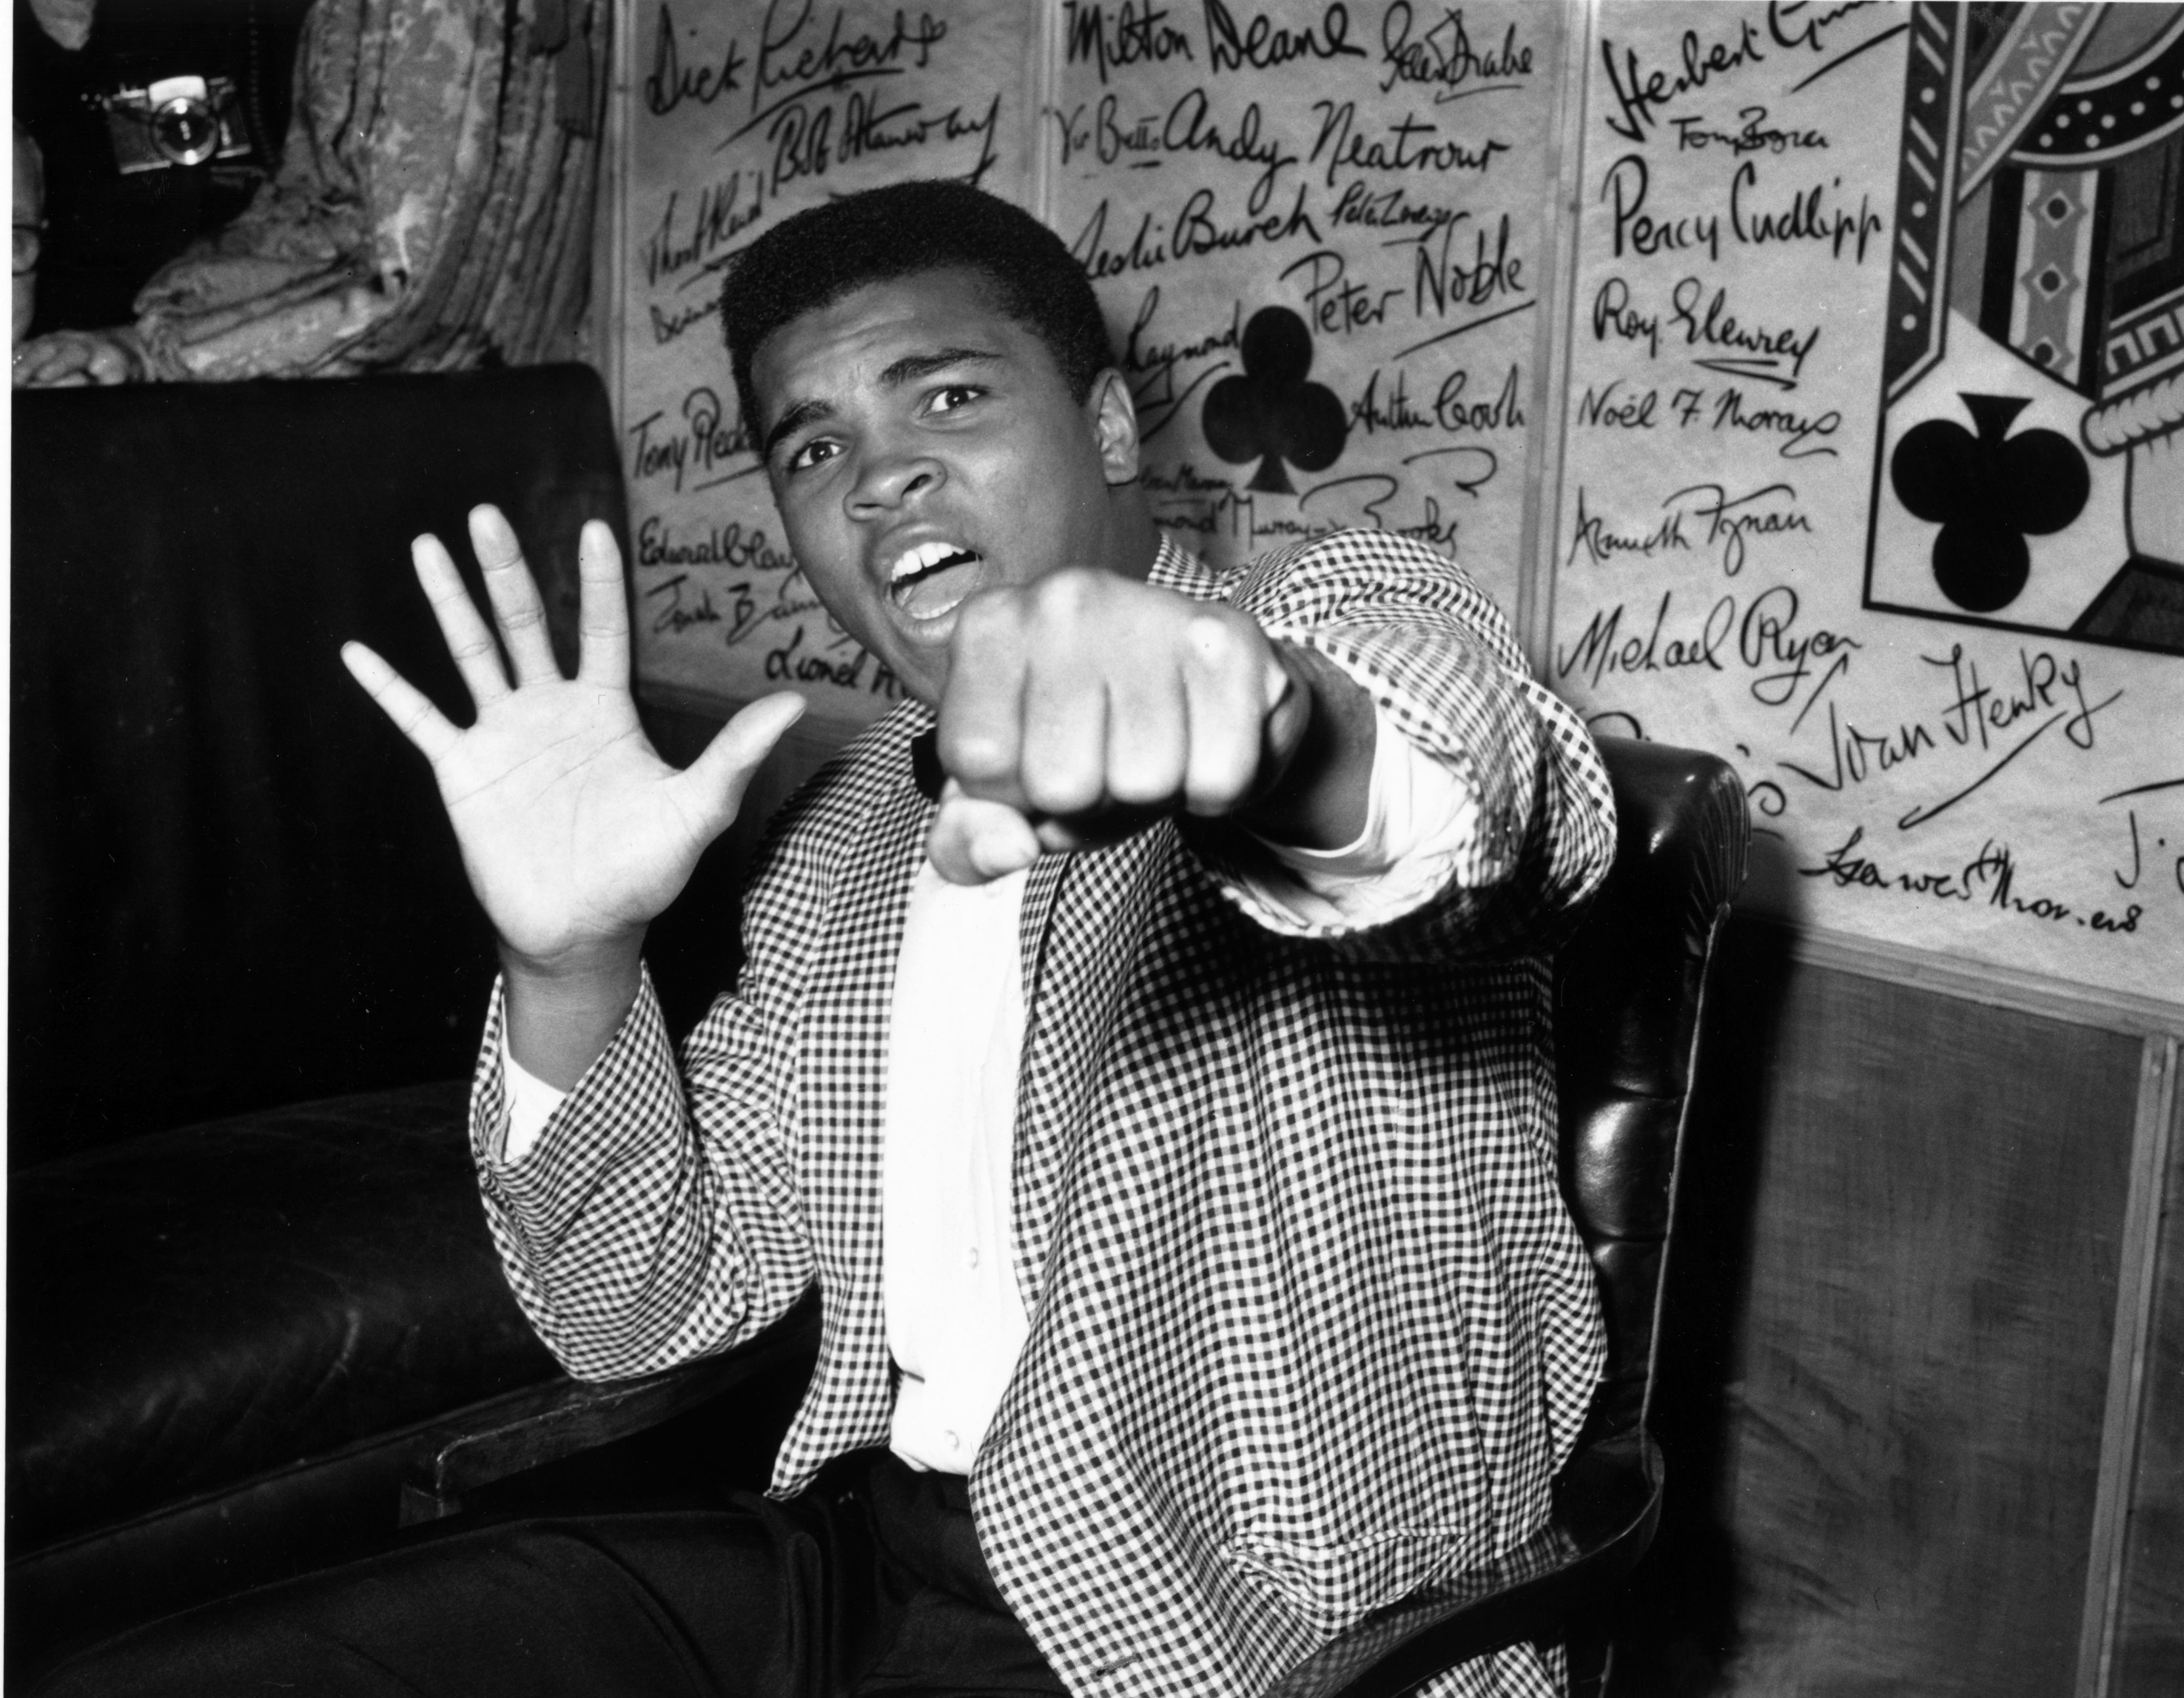 Muhammad Ali vzdoroval návrhu Vietnamu před 50 lety